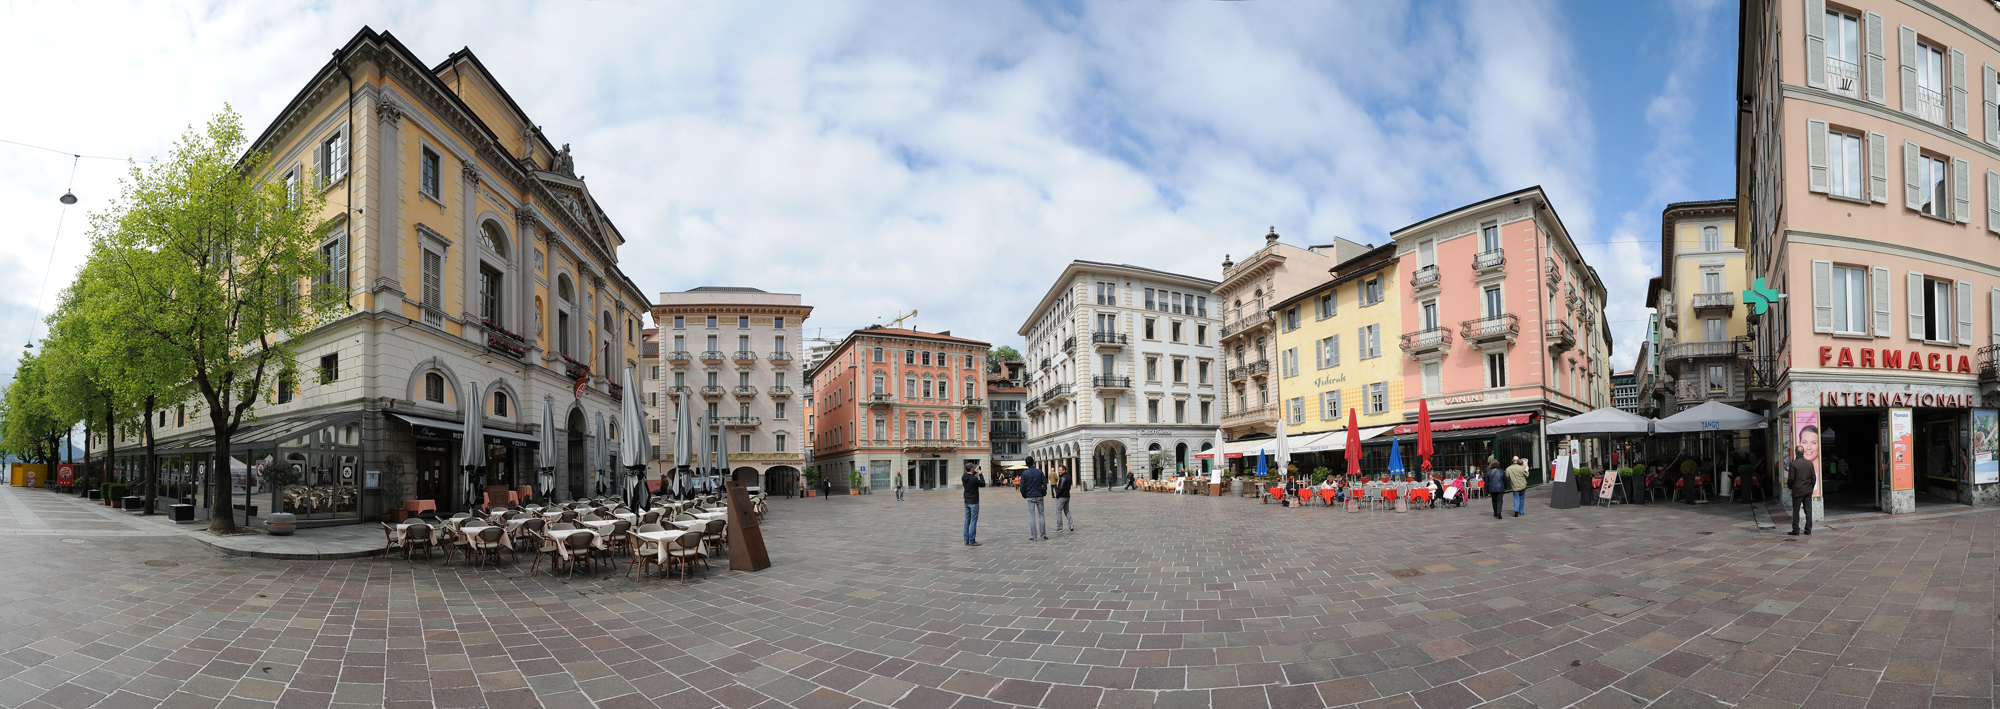 Панарамный вид площади Piazza della Riforma